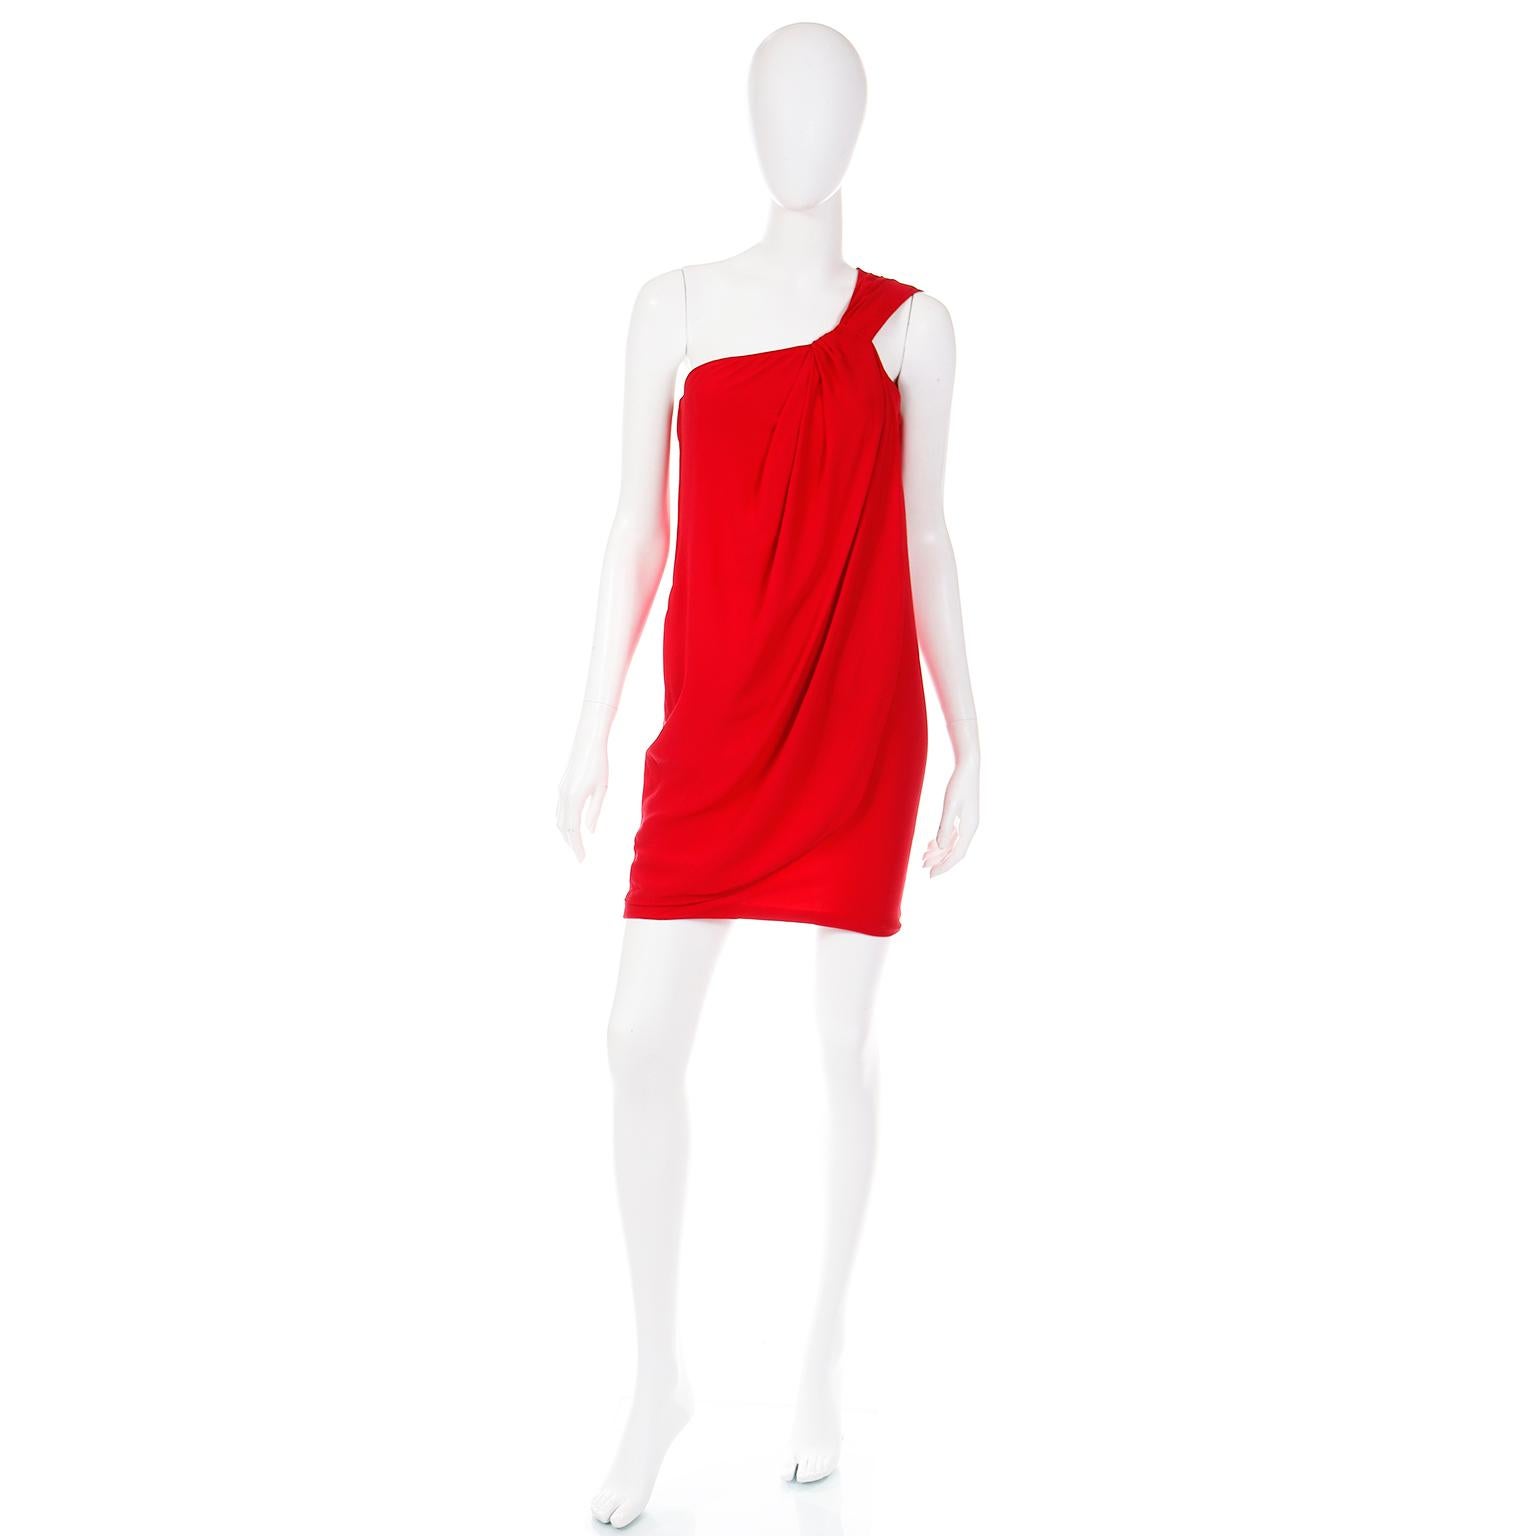 Dieses luxuriöse Vintage-Kleid aus roter Seide wurde in den 1990er Jahren von Emanuel Ungaro entworfen. Dieses Abendkleid von Ungaro Parallele ist in einem satten, blauen Rotton gehalten, der sehr schmeichelhaft ist!  Der feine Seidenchiffon